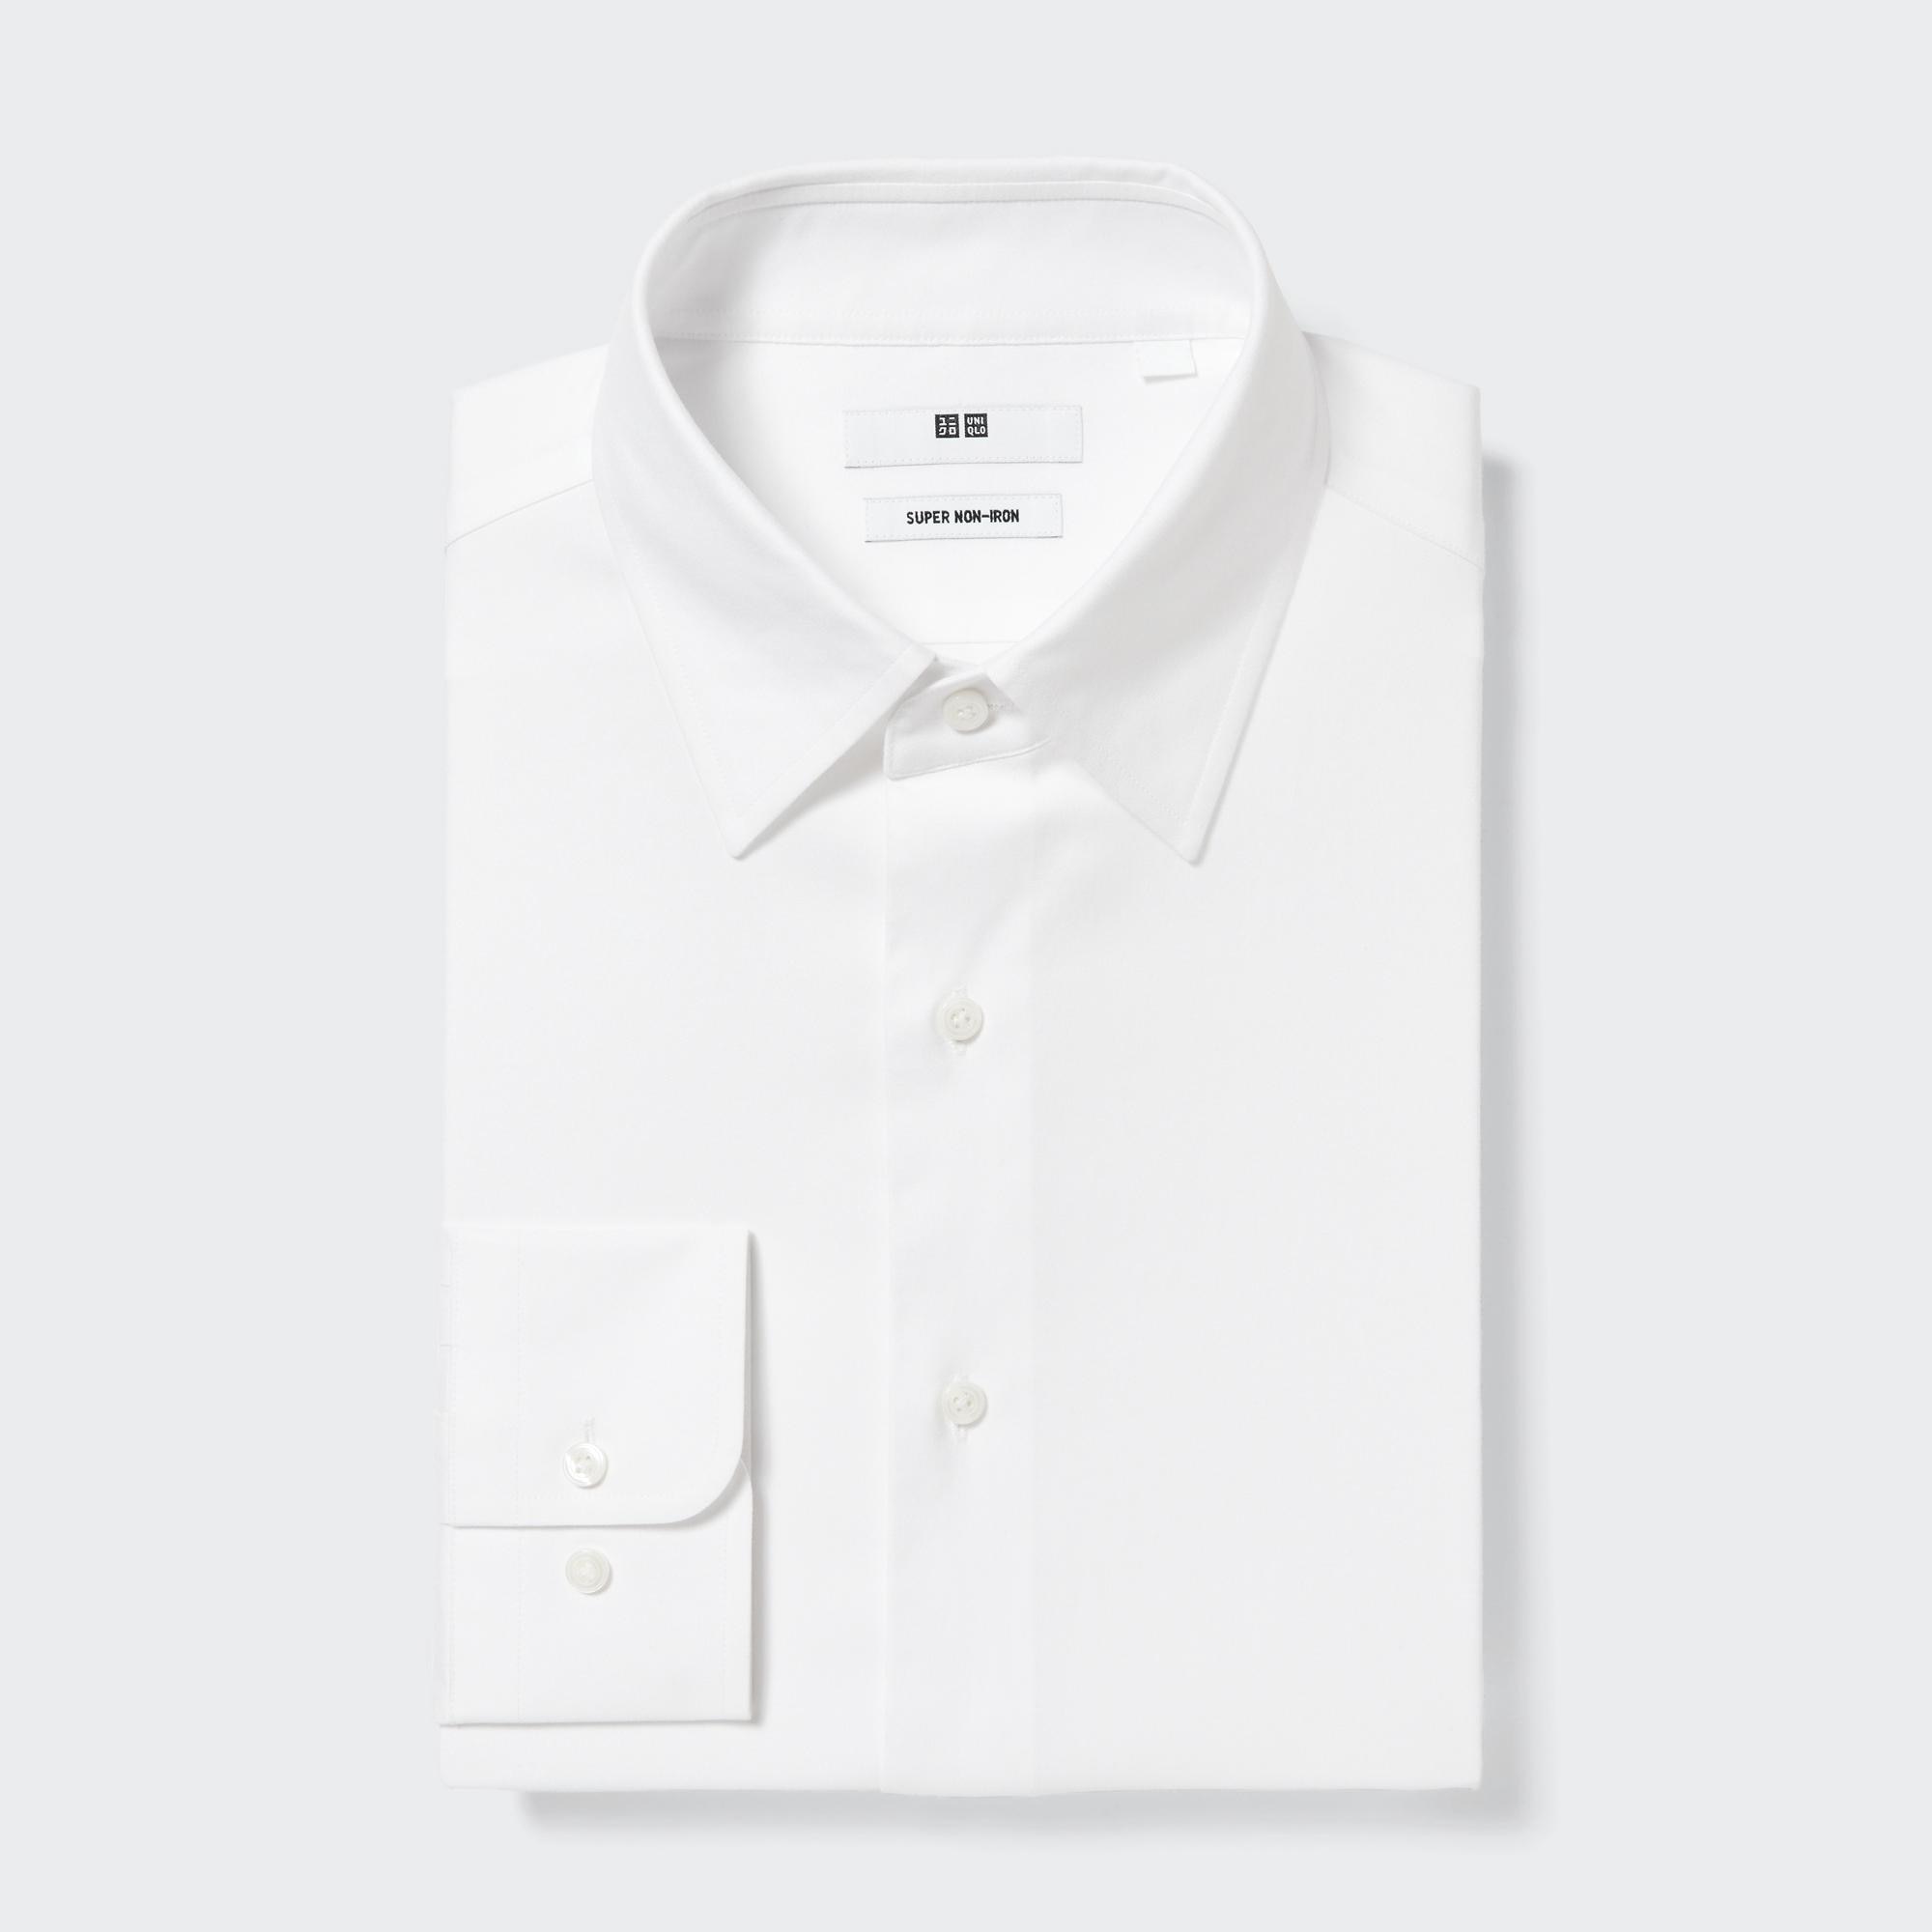 Рубашка UNIQLO Super Non-iron стандартного кроя, белый рубашка zara non iron stretch белый